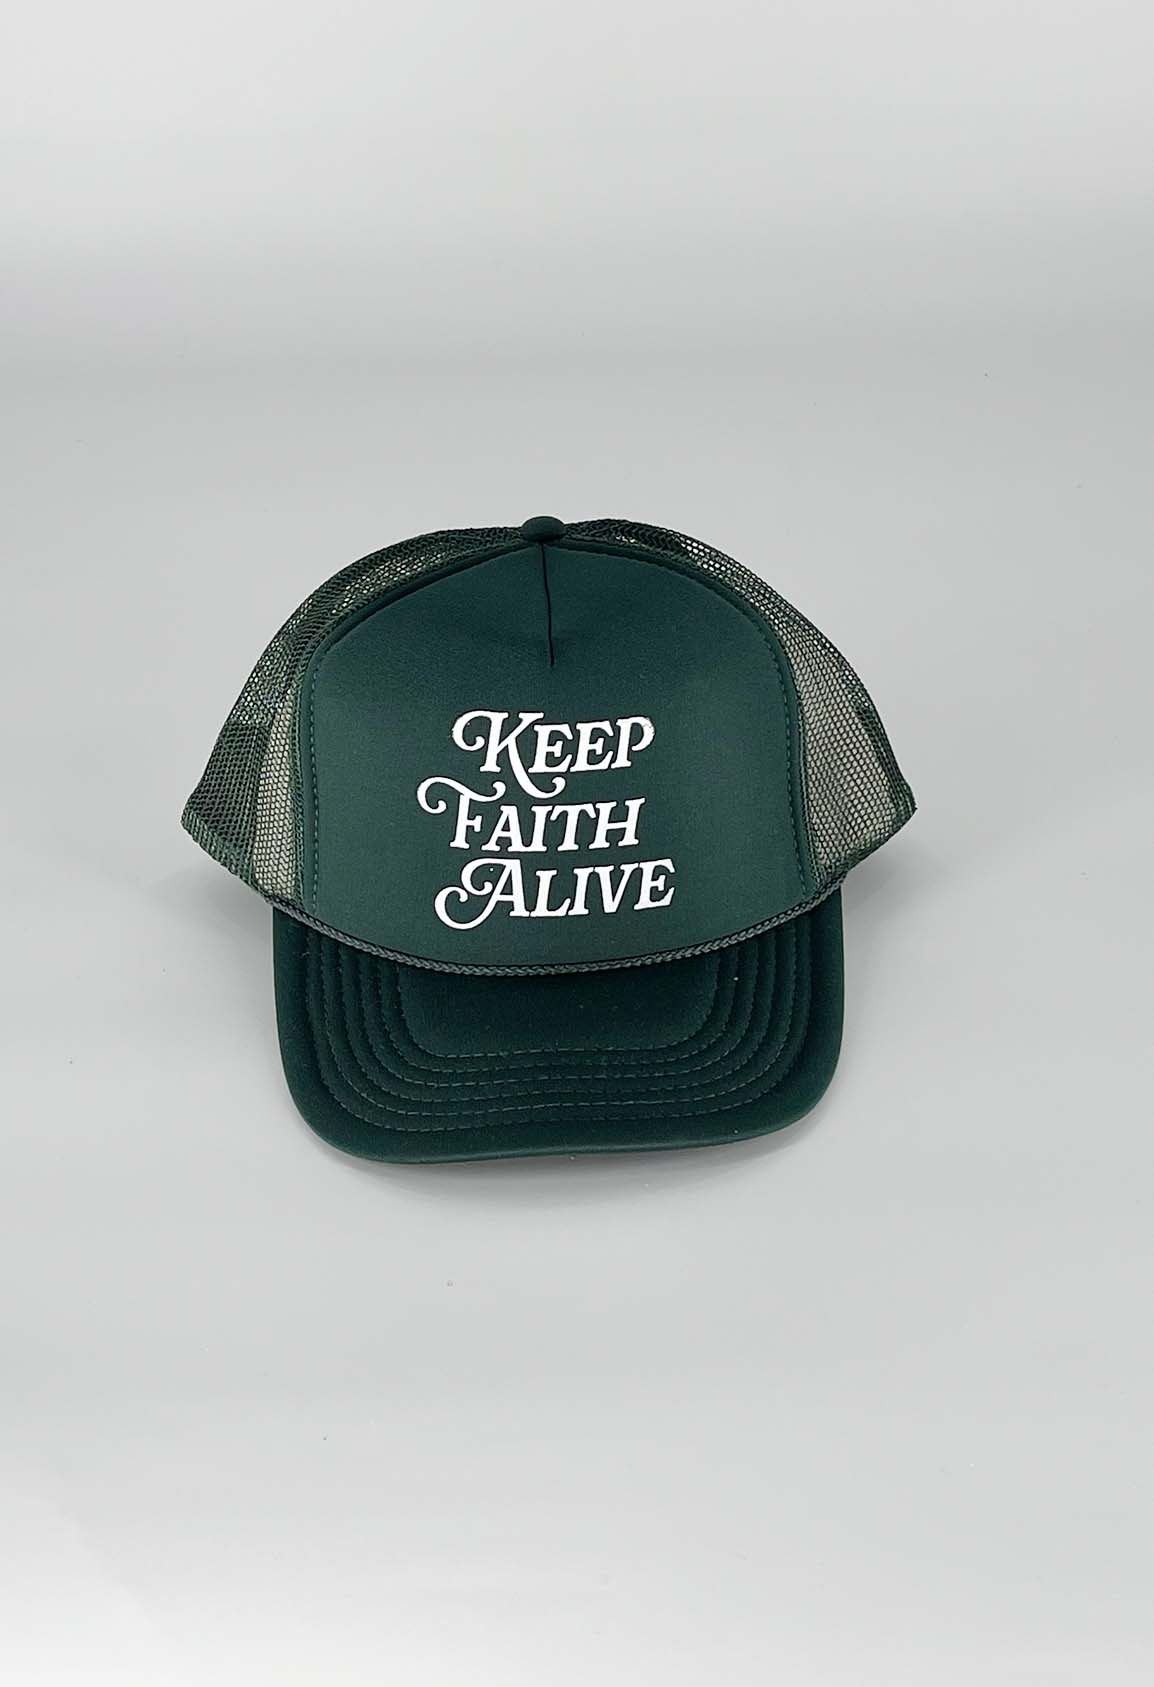 FrshFaith: Keep Faith Alive. Hope is in the Lord Jesus Christ. Keep Faith Alive.